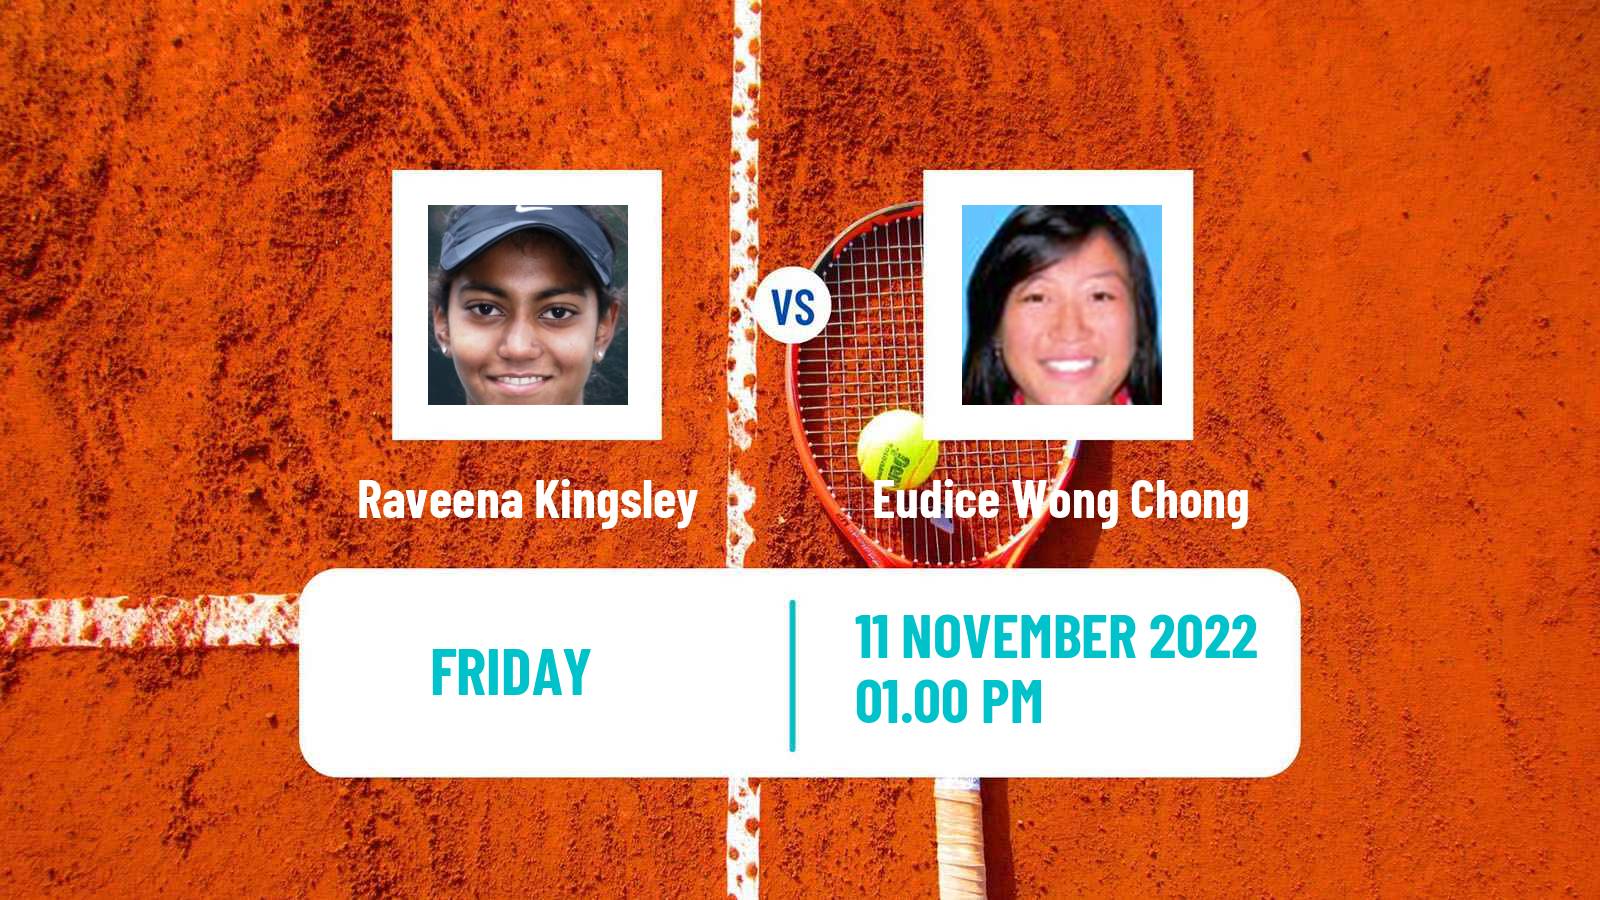 Tennis ITF Tournaments Raveena Kingsley - Eudice Wong Chong